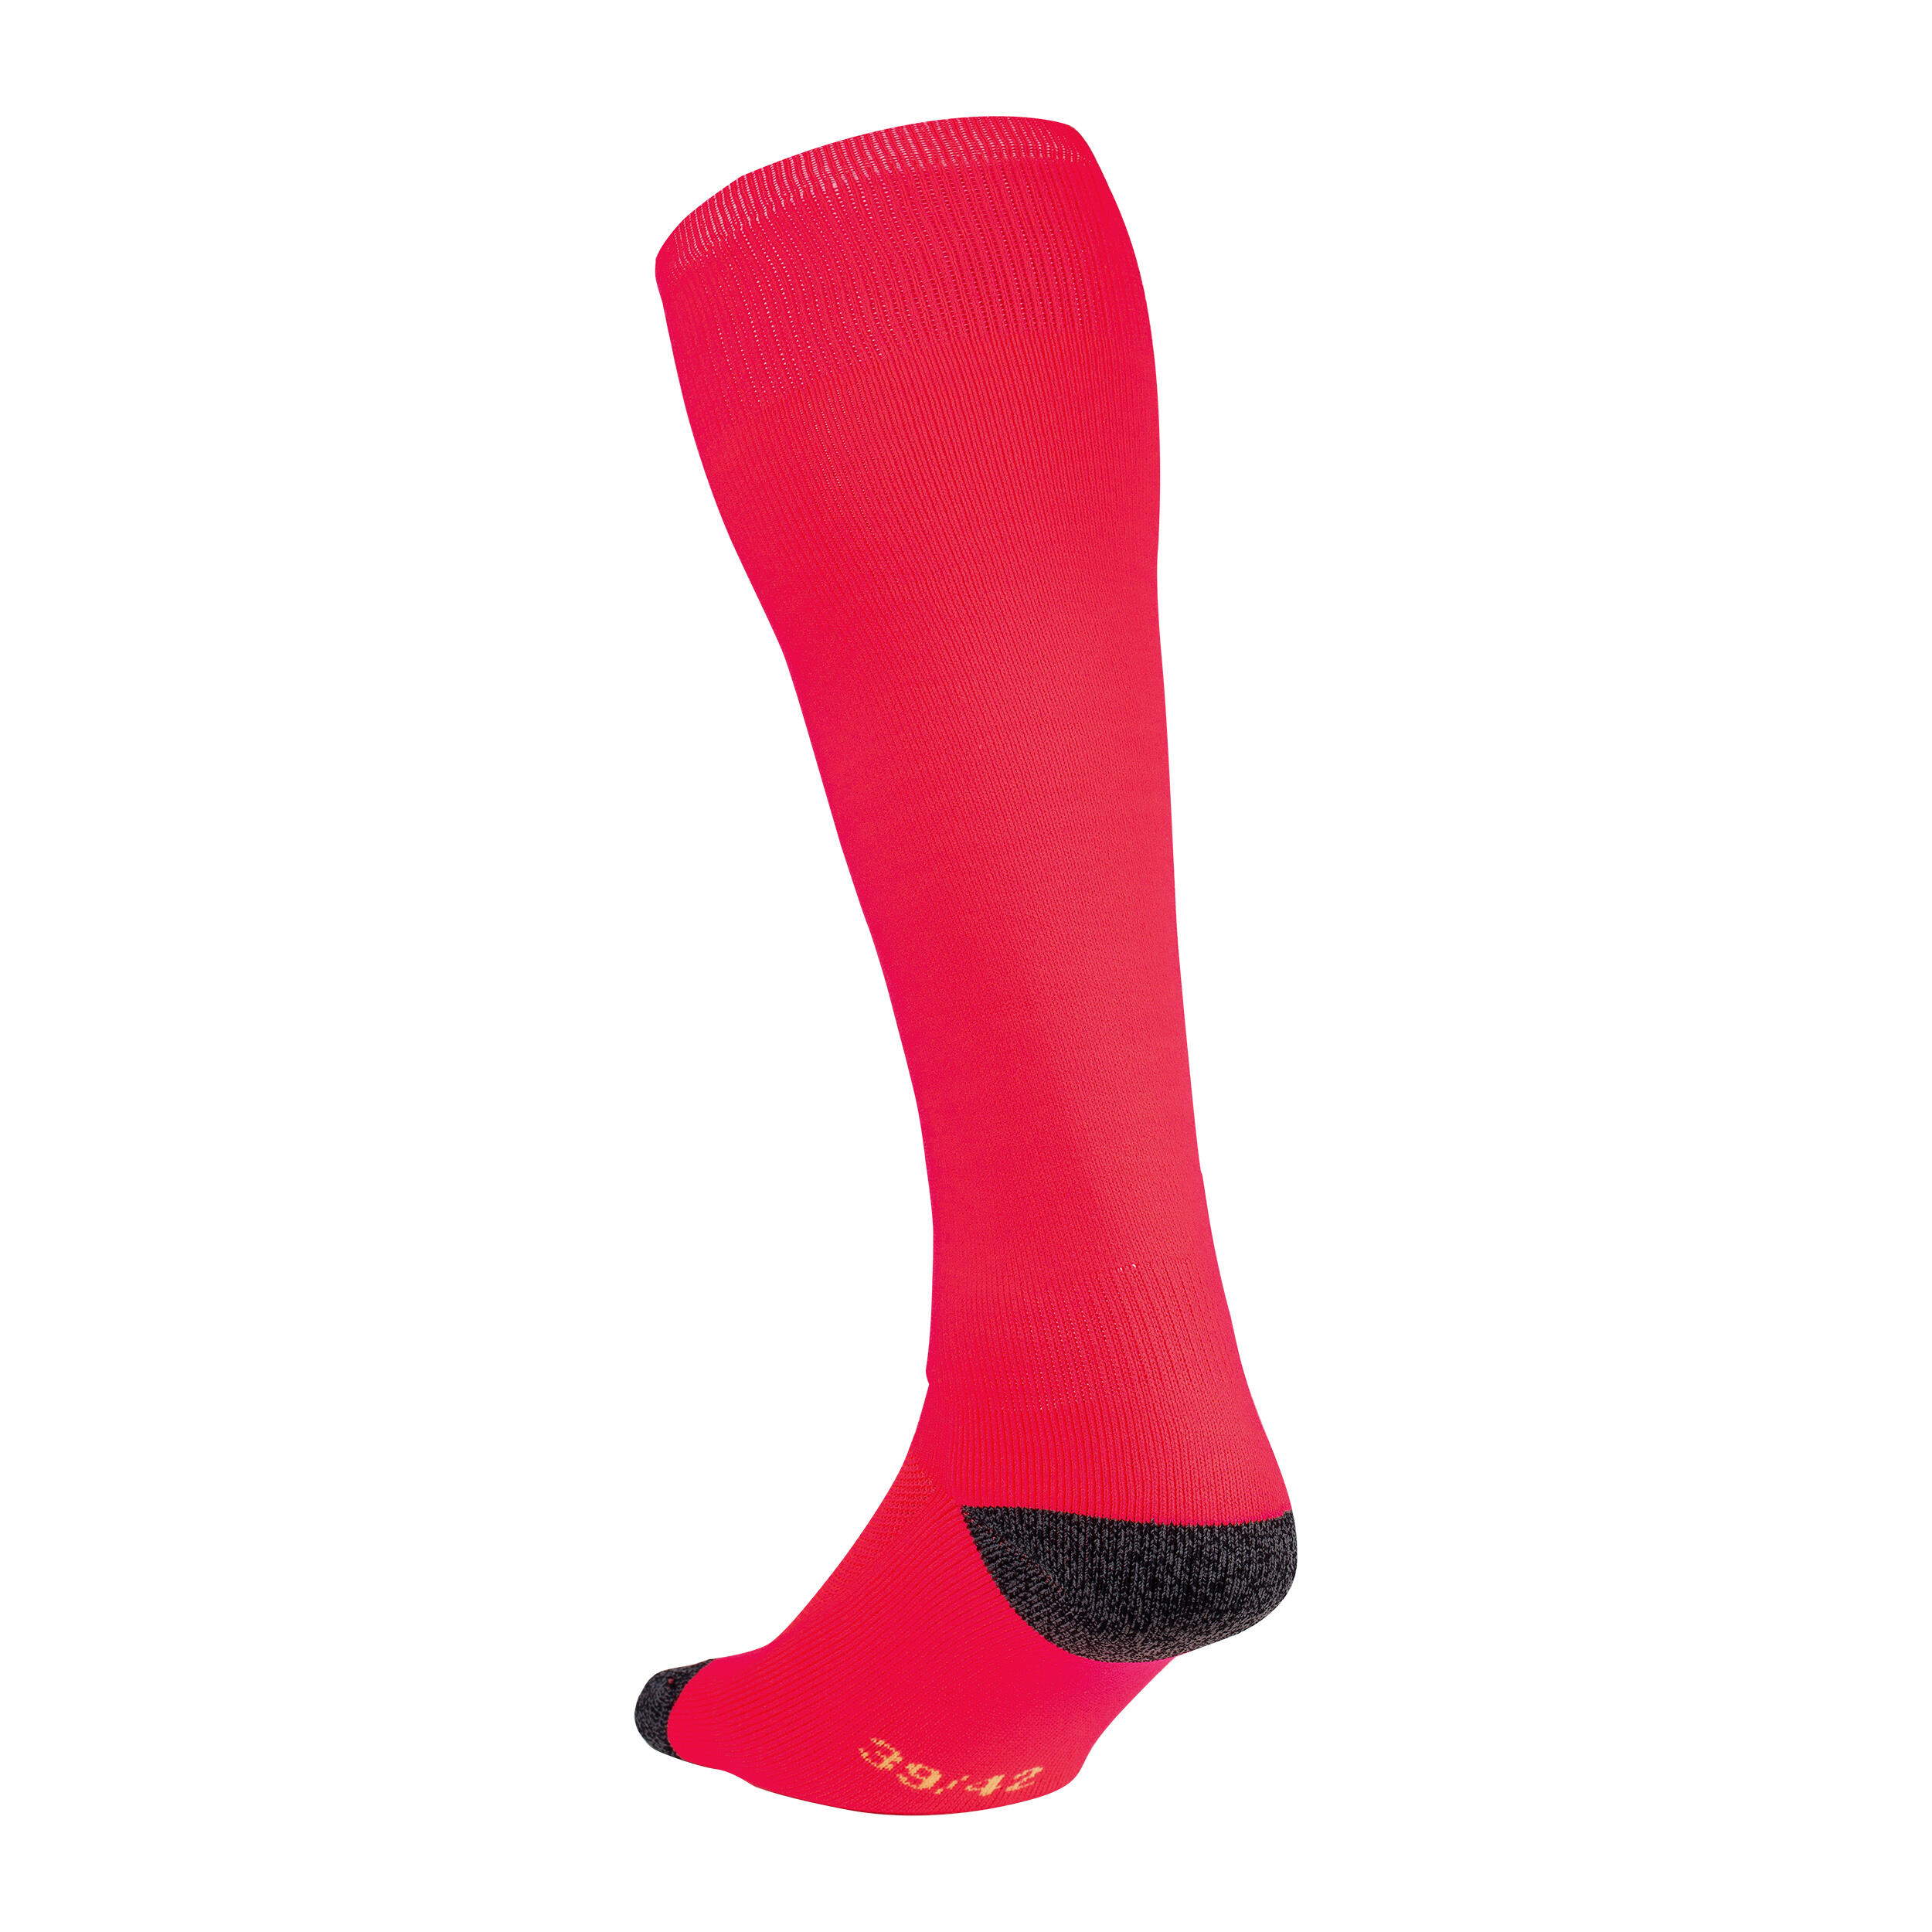 Kids' Field Hockey Socks FH500 - Neon Pink 2/4